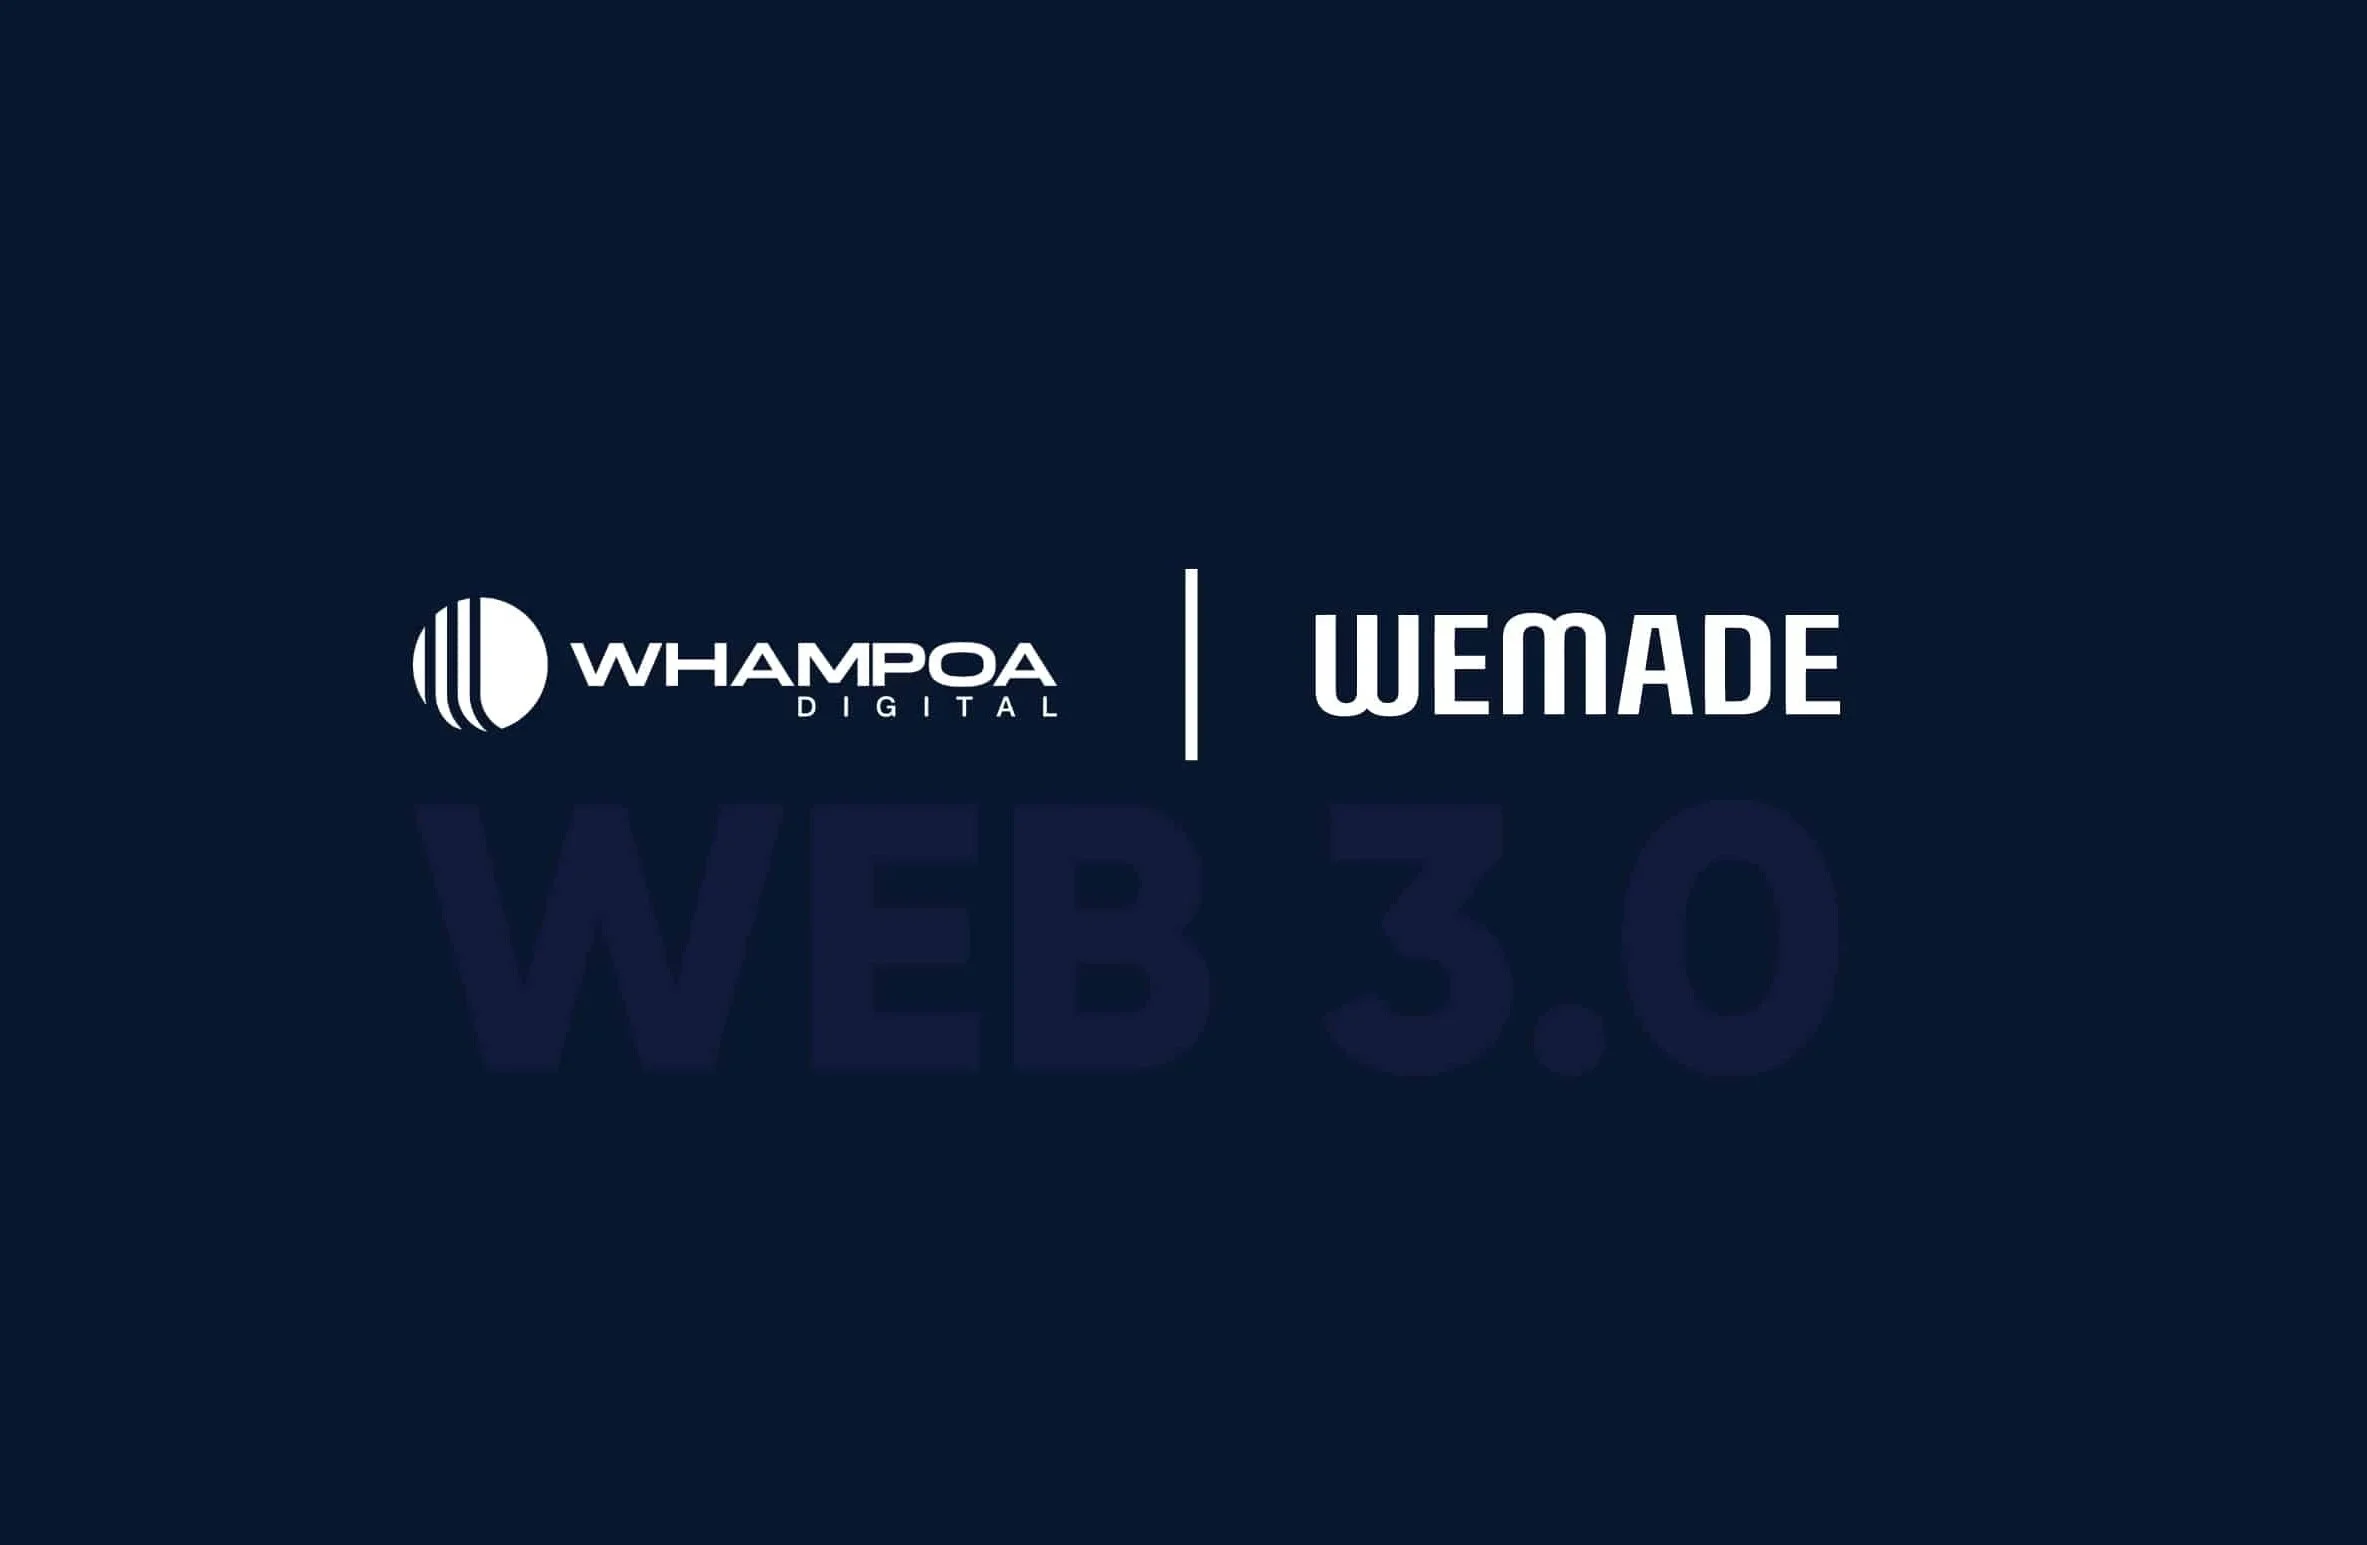 Wemade samarbejder med Whampoa Digital til Web3-spilprojekter